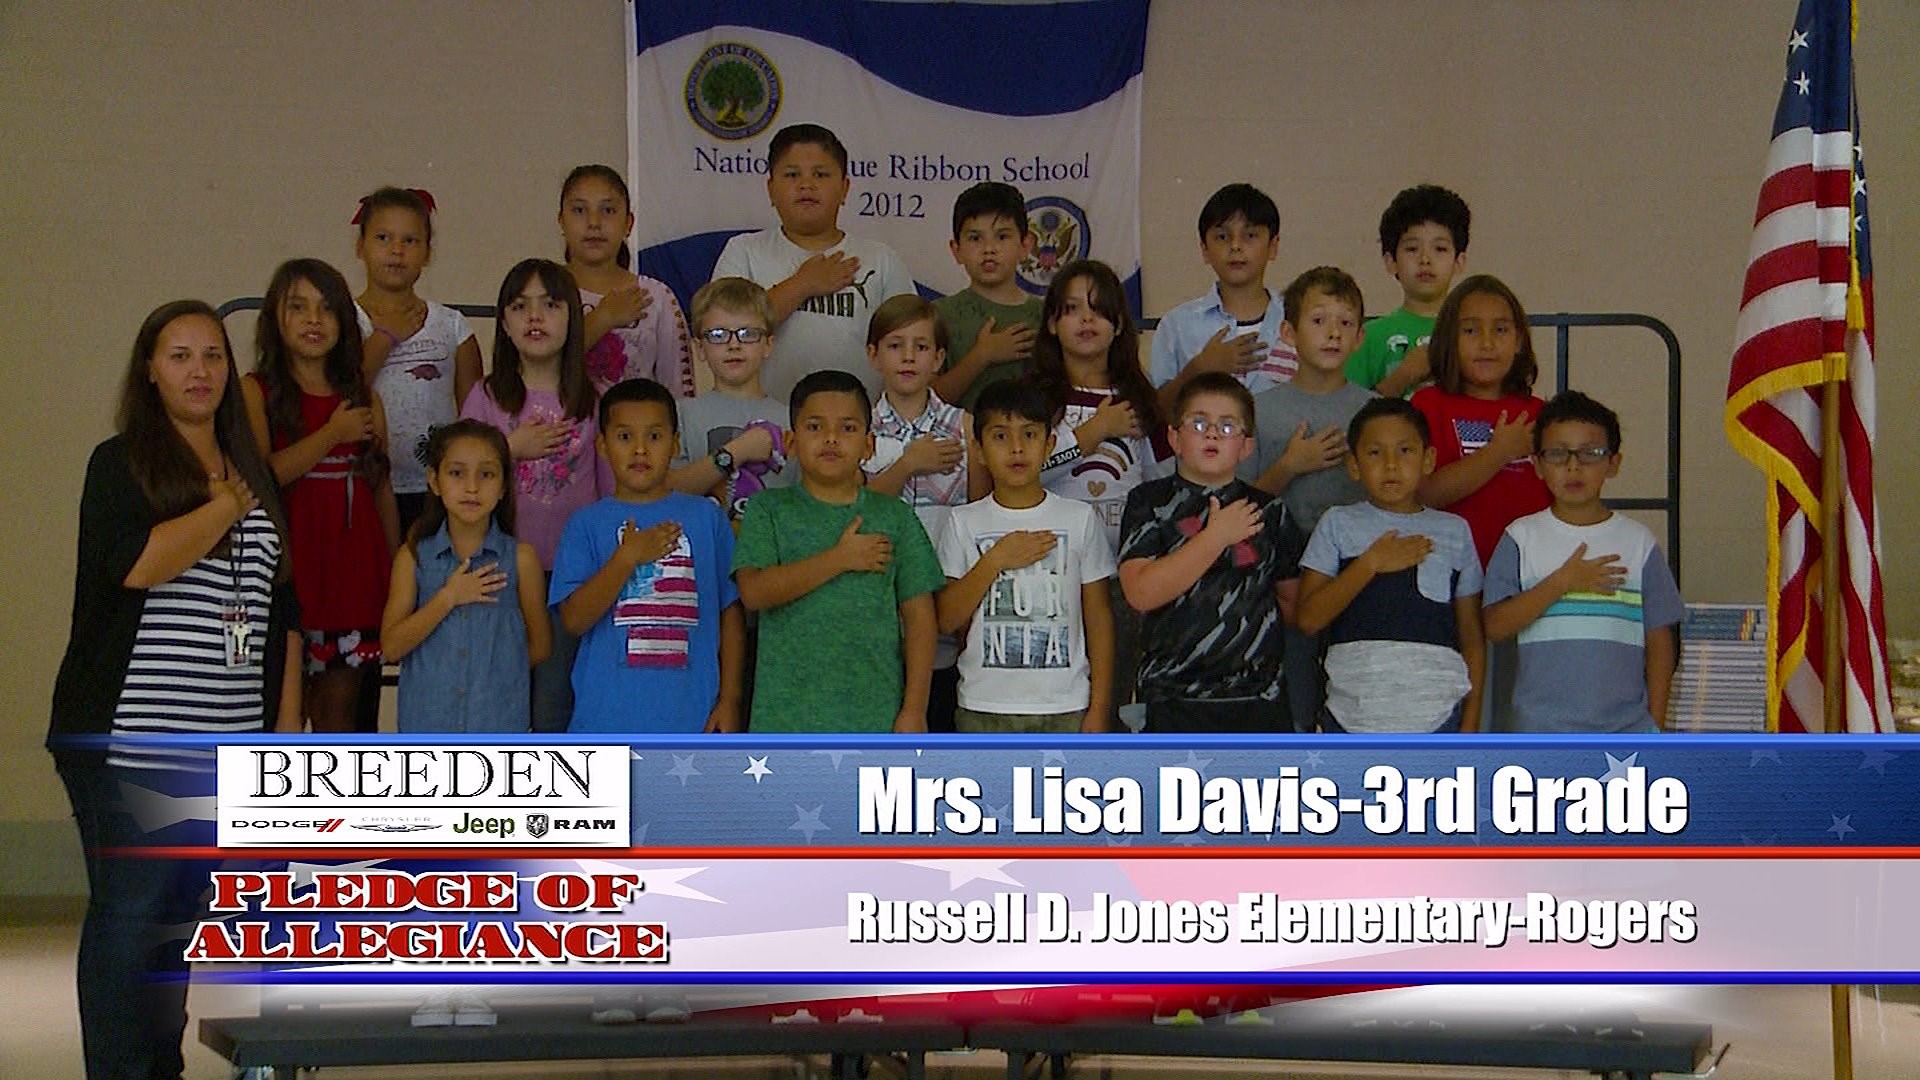 Mrs. Lisa Davis- 3rd Grade Russell D. Jones Elementary, Rogers